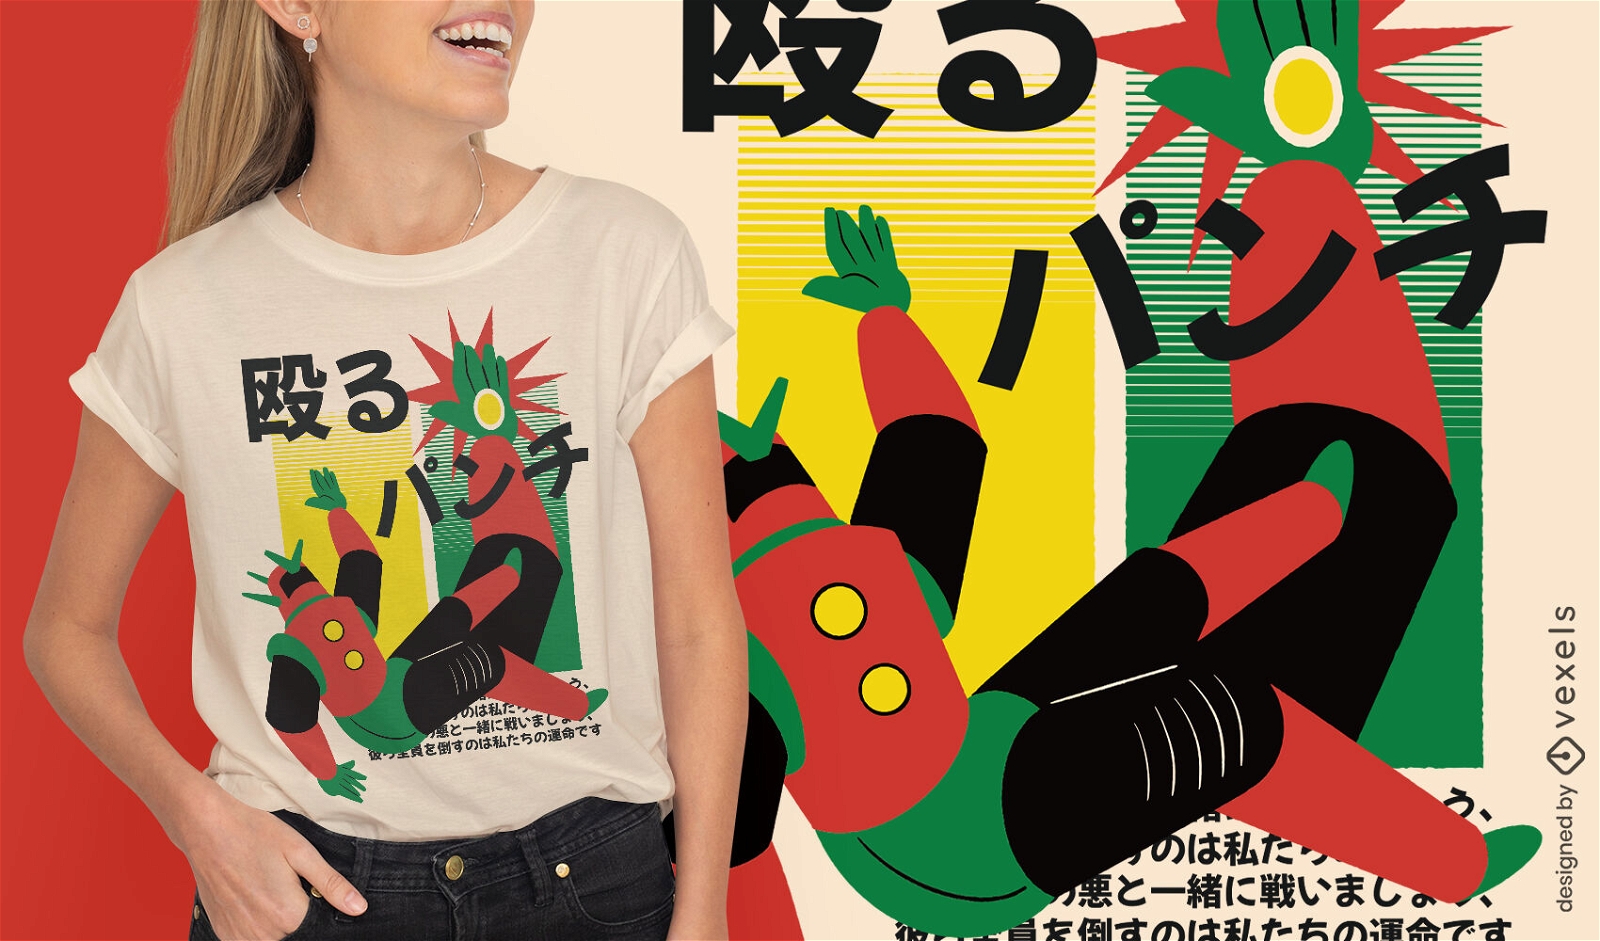 Japanese robot fight t-shirt design